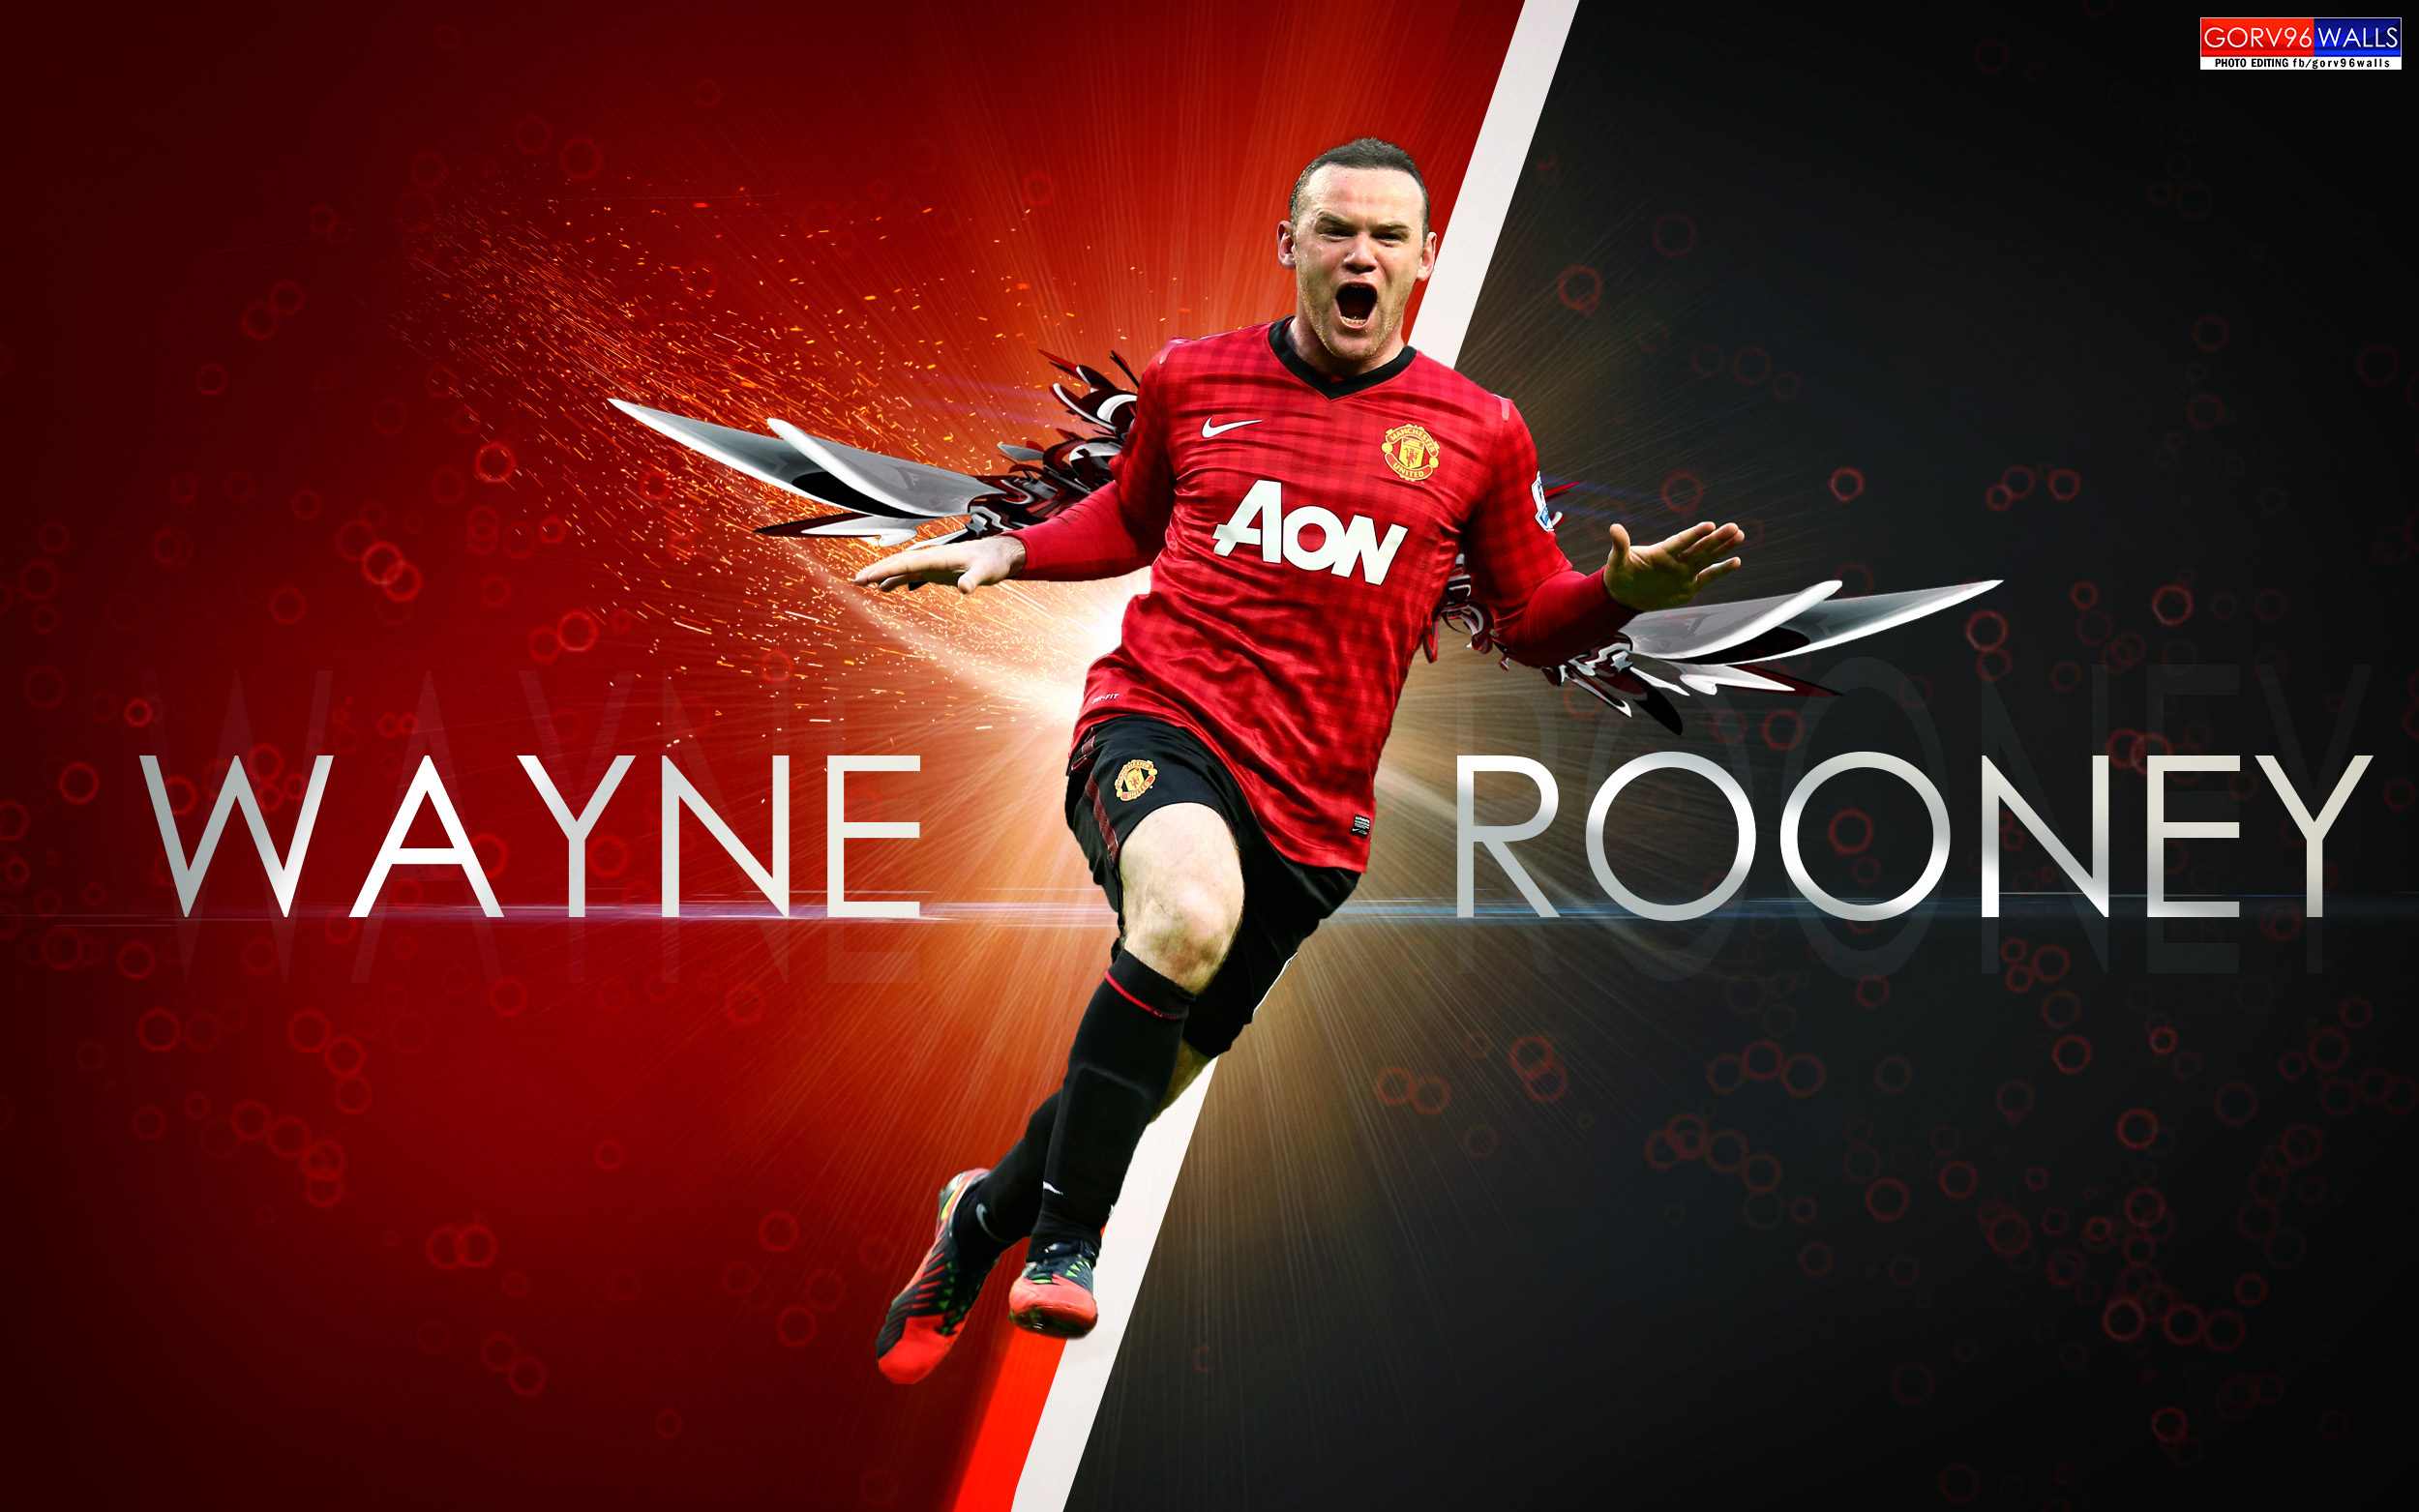 Wayne Rooney Wallpaper Nike - wallpaper